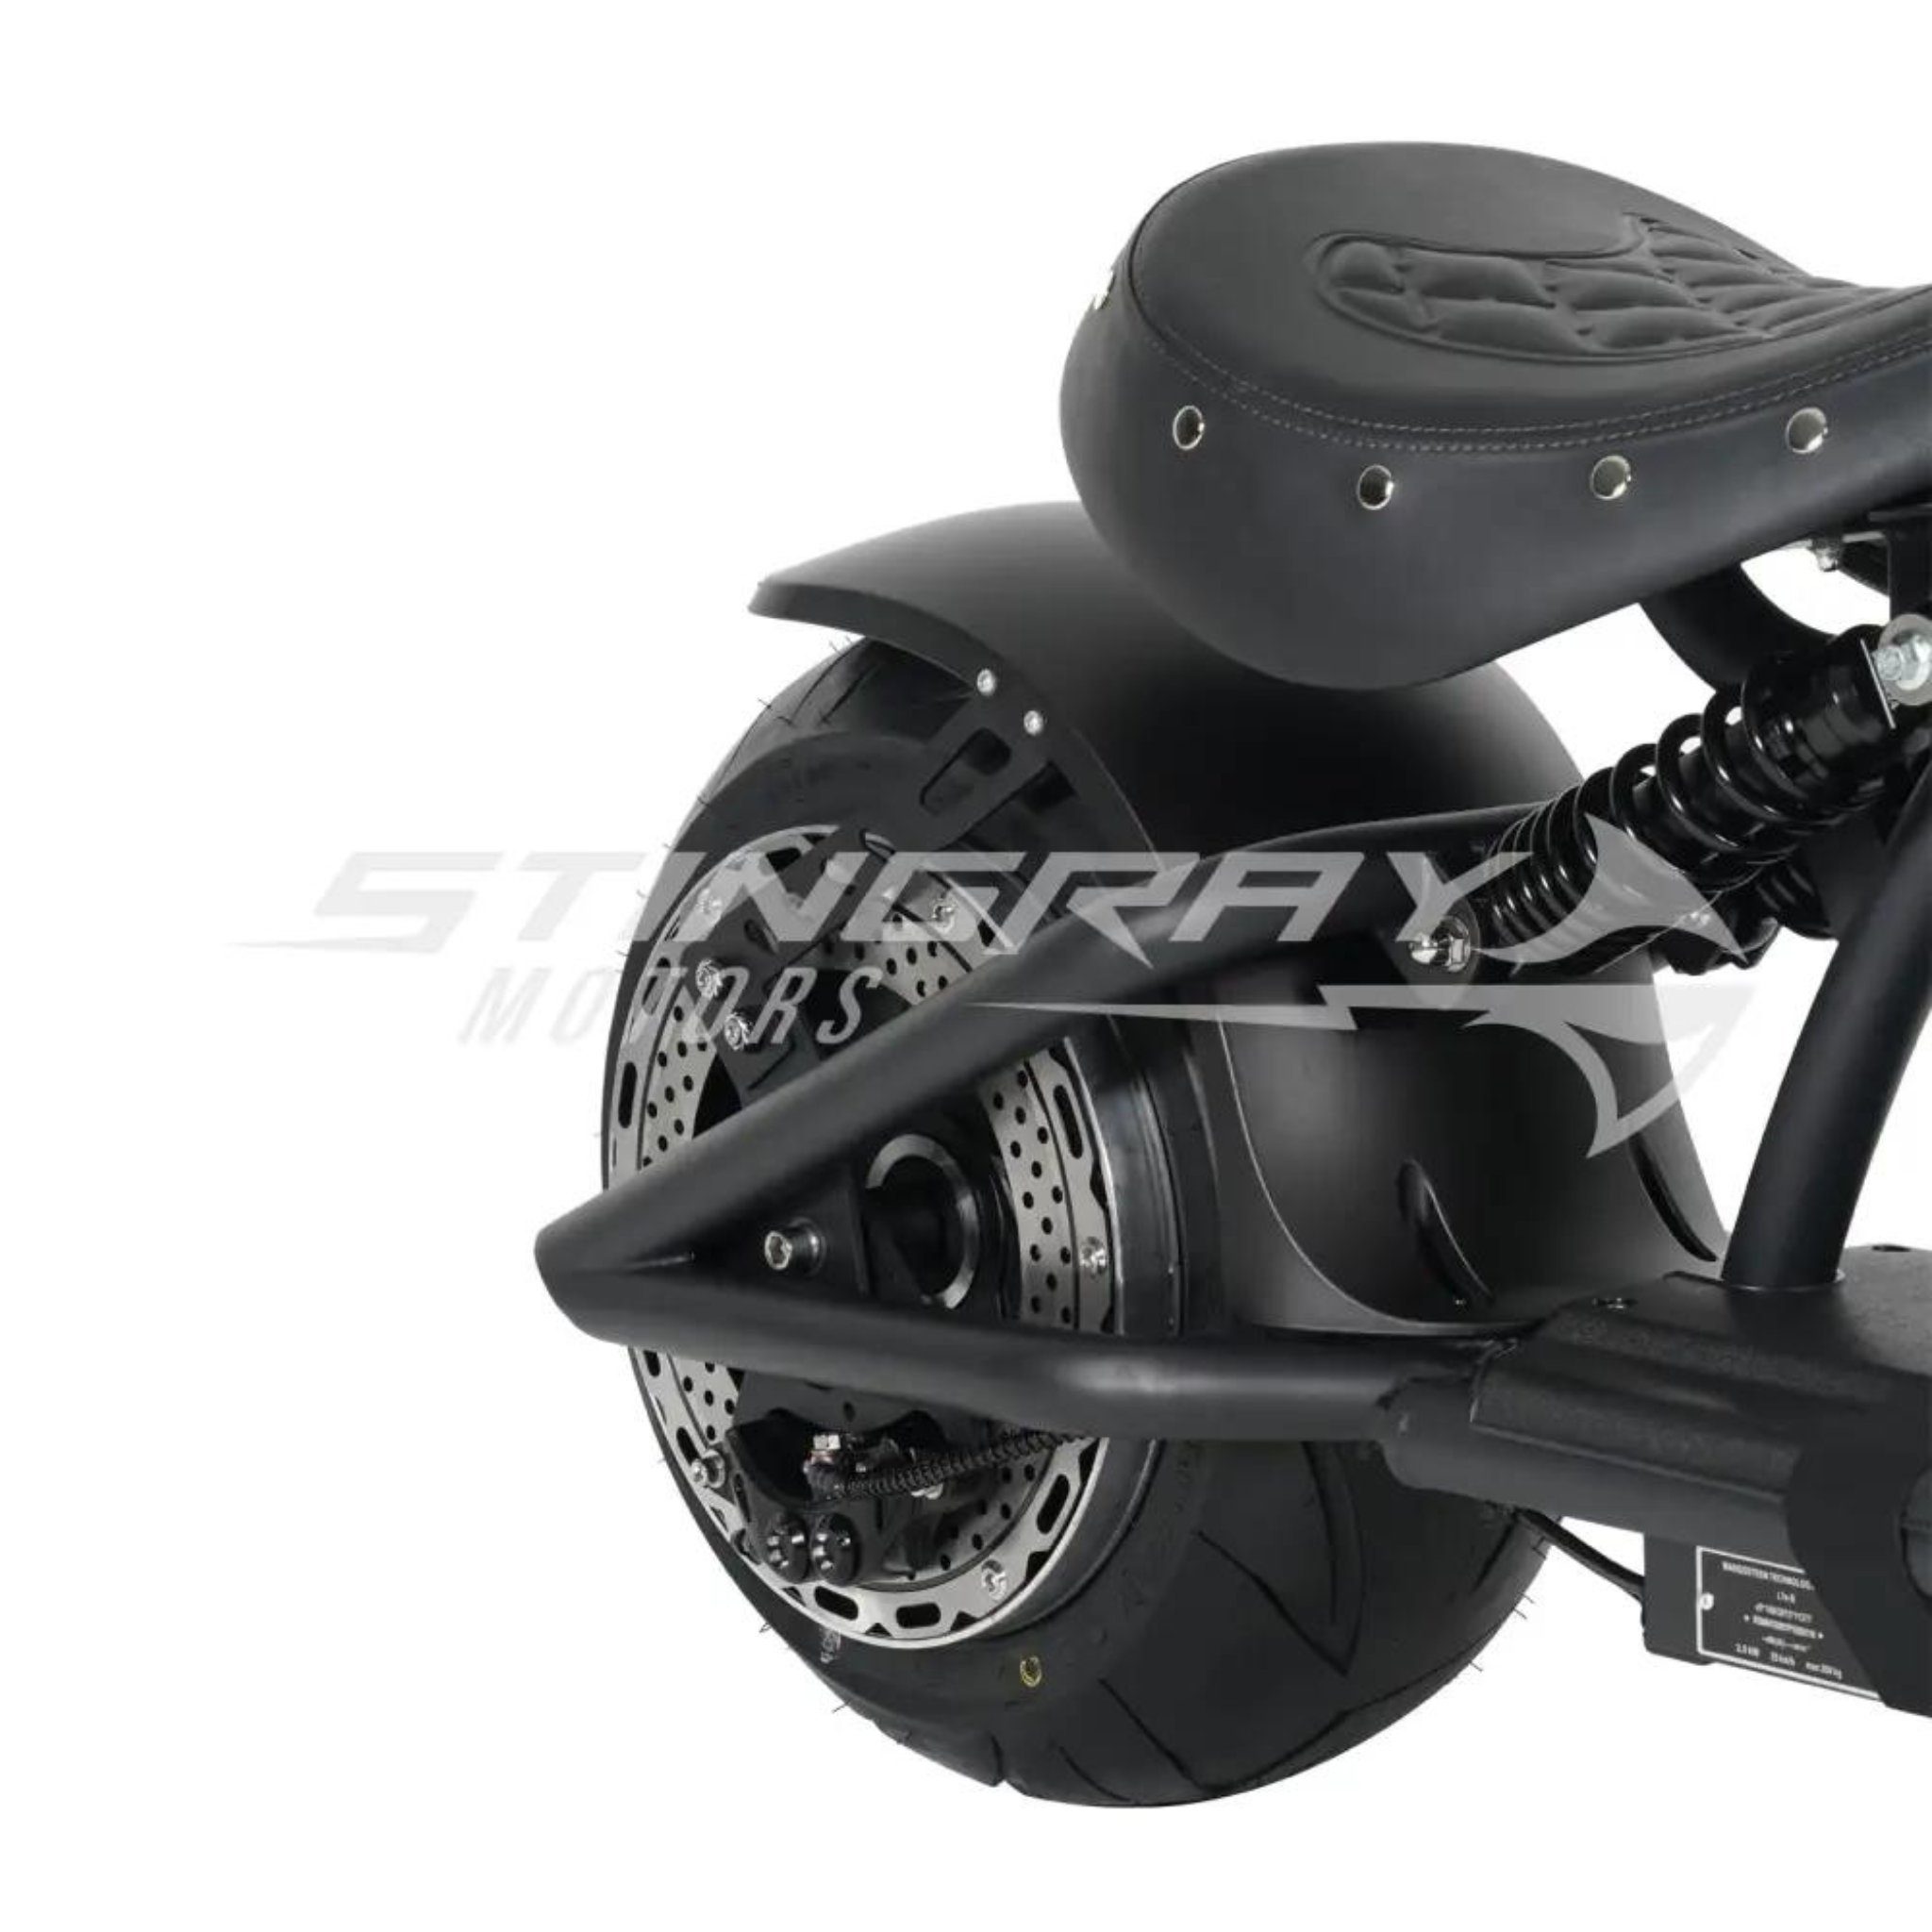 Stingray Motors E-Motorroller Elektroroller Chopper E km/h Stingray - 3kw 45 Grün Harley 3000,00 Custom M1P, 30Ah - W, 